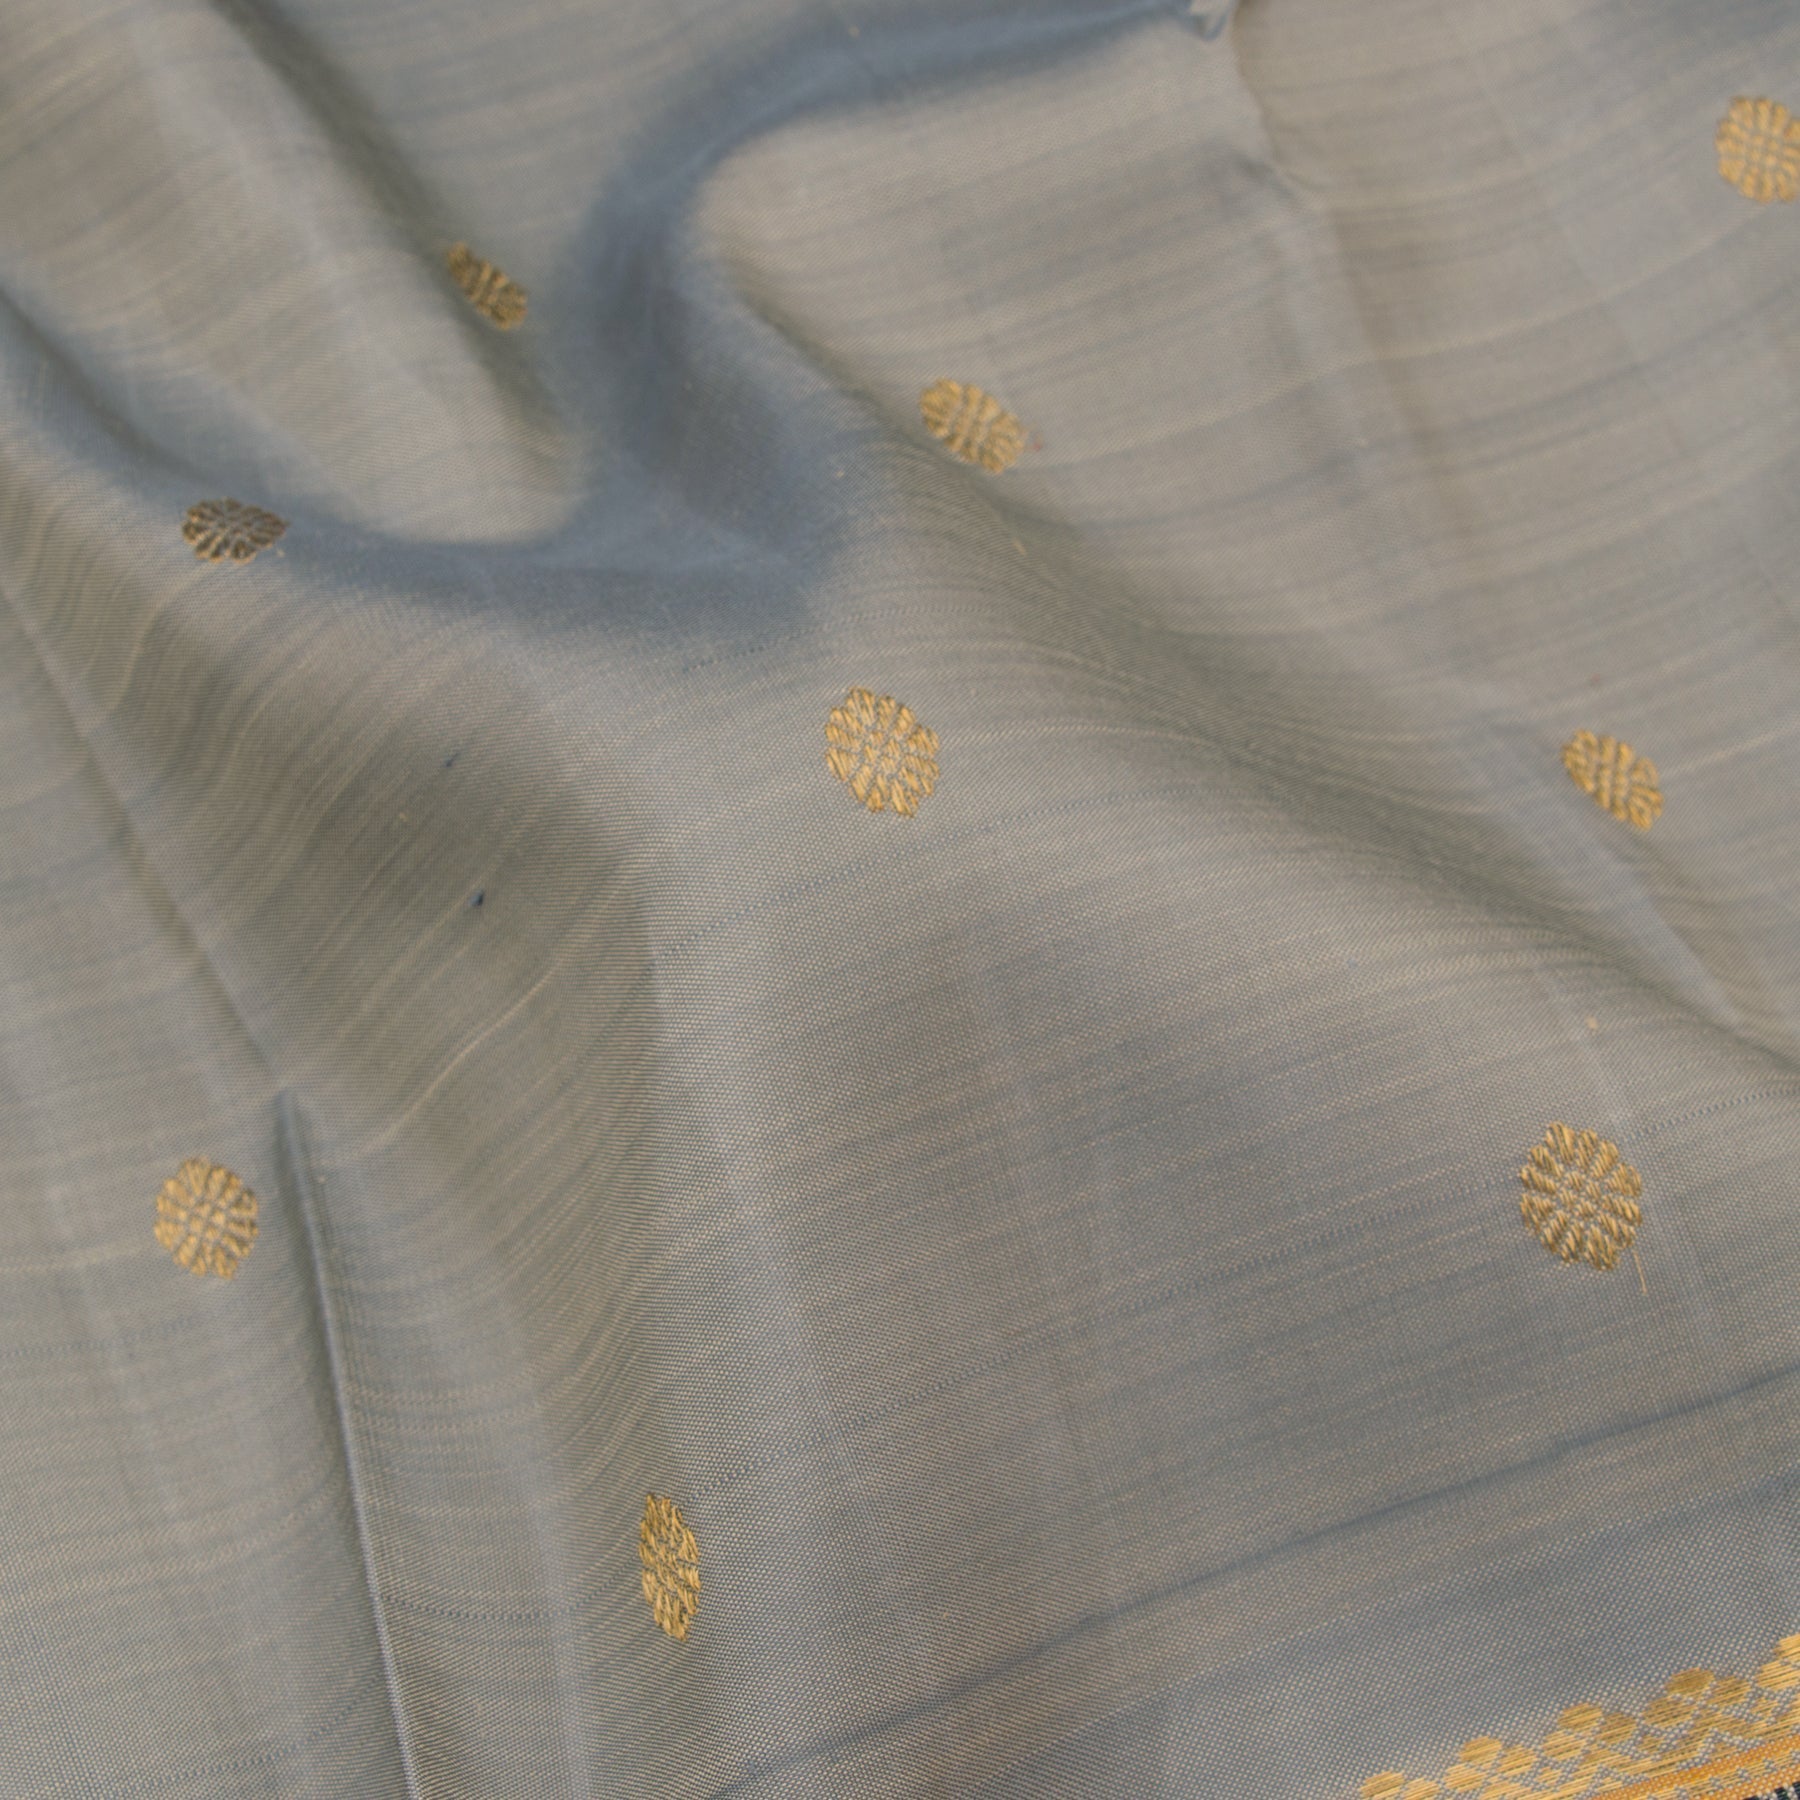 Kanakavalli Kanjivaram Silk Sari 22-041-HS001-06898 - Fabric View